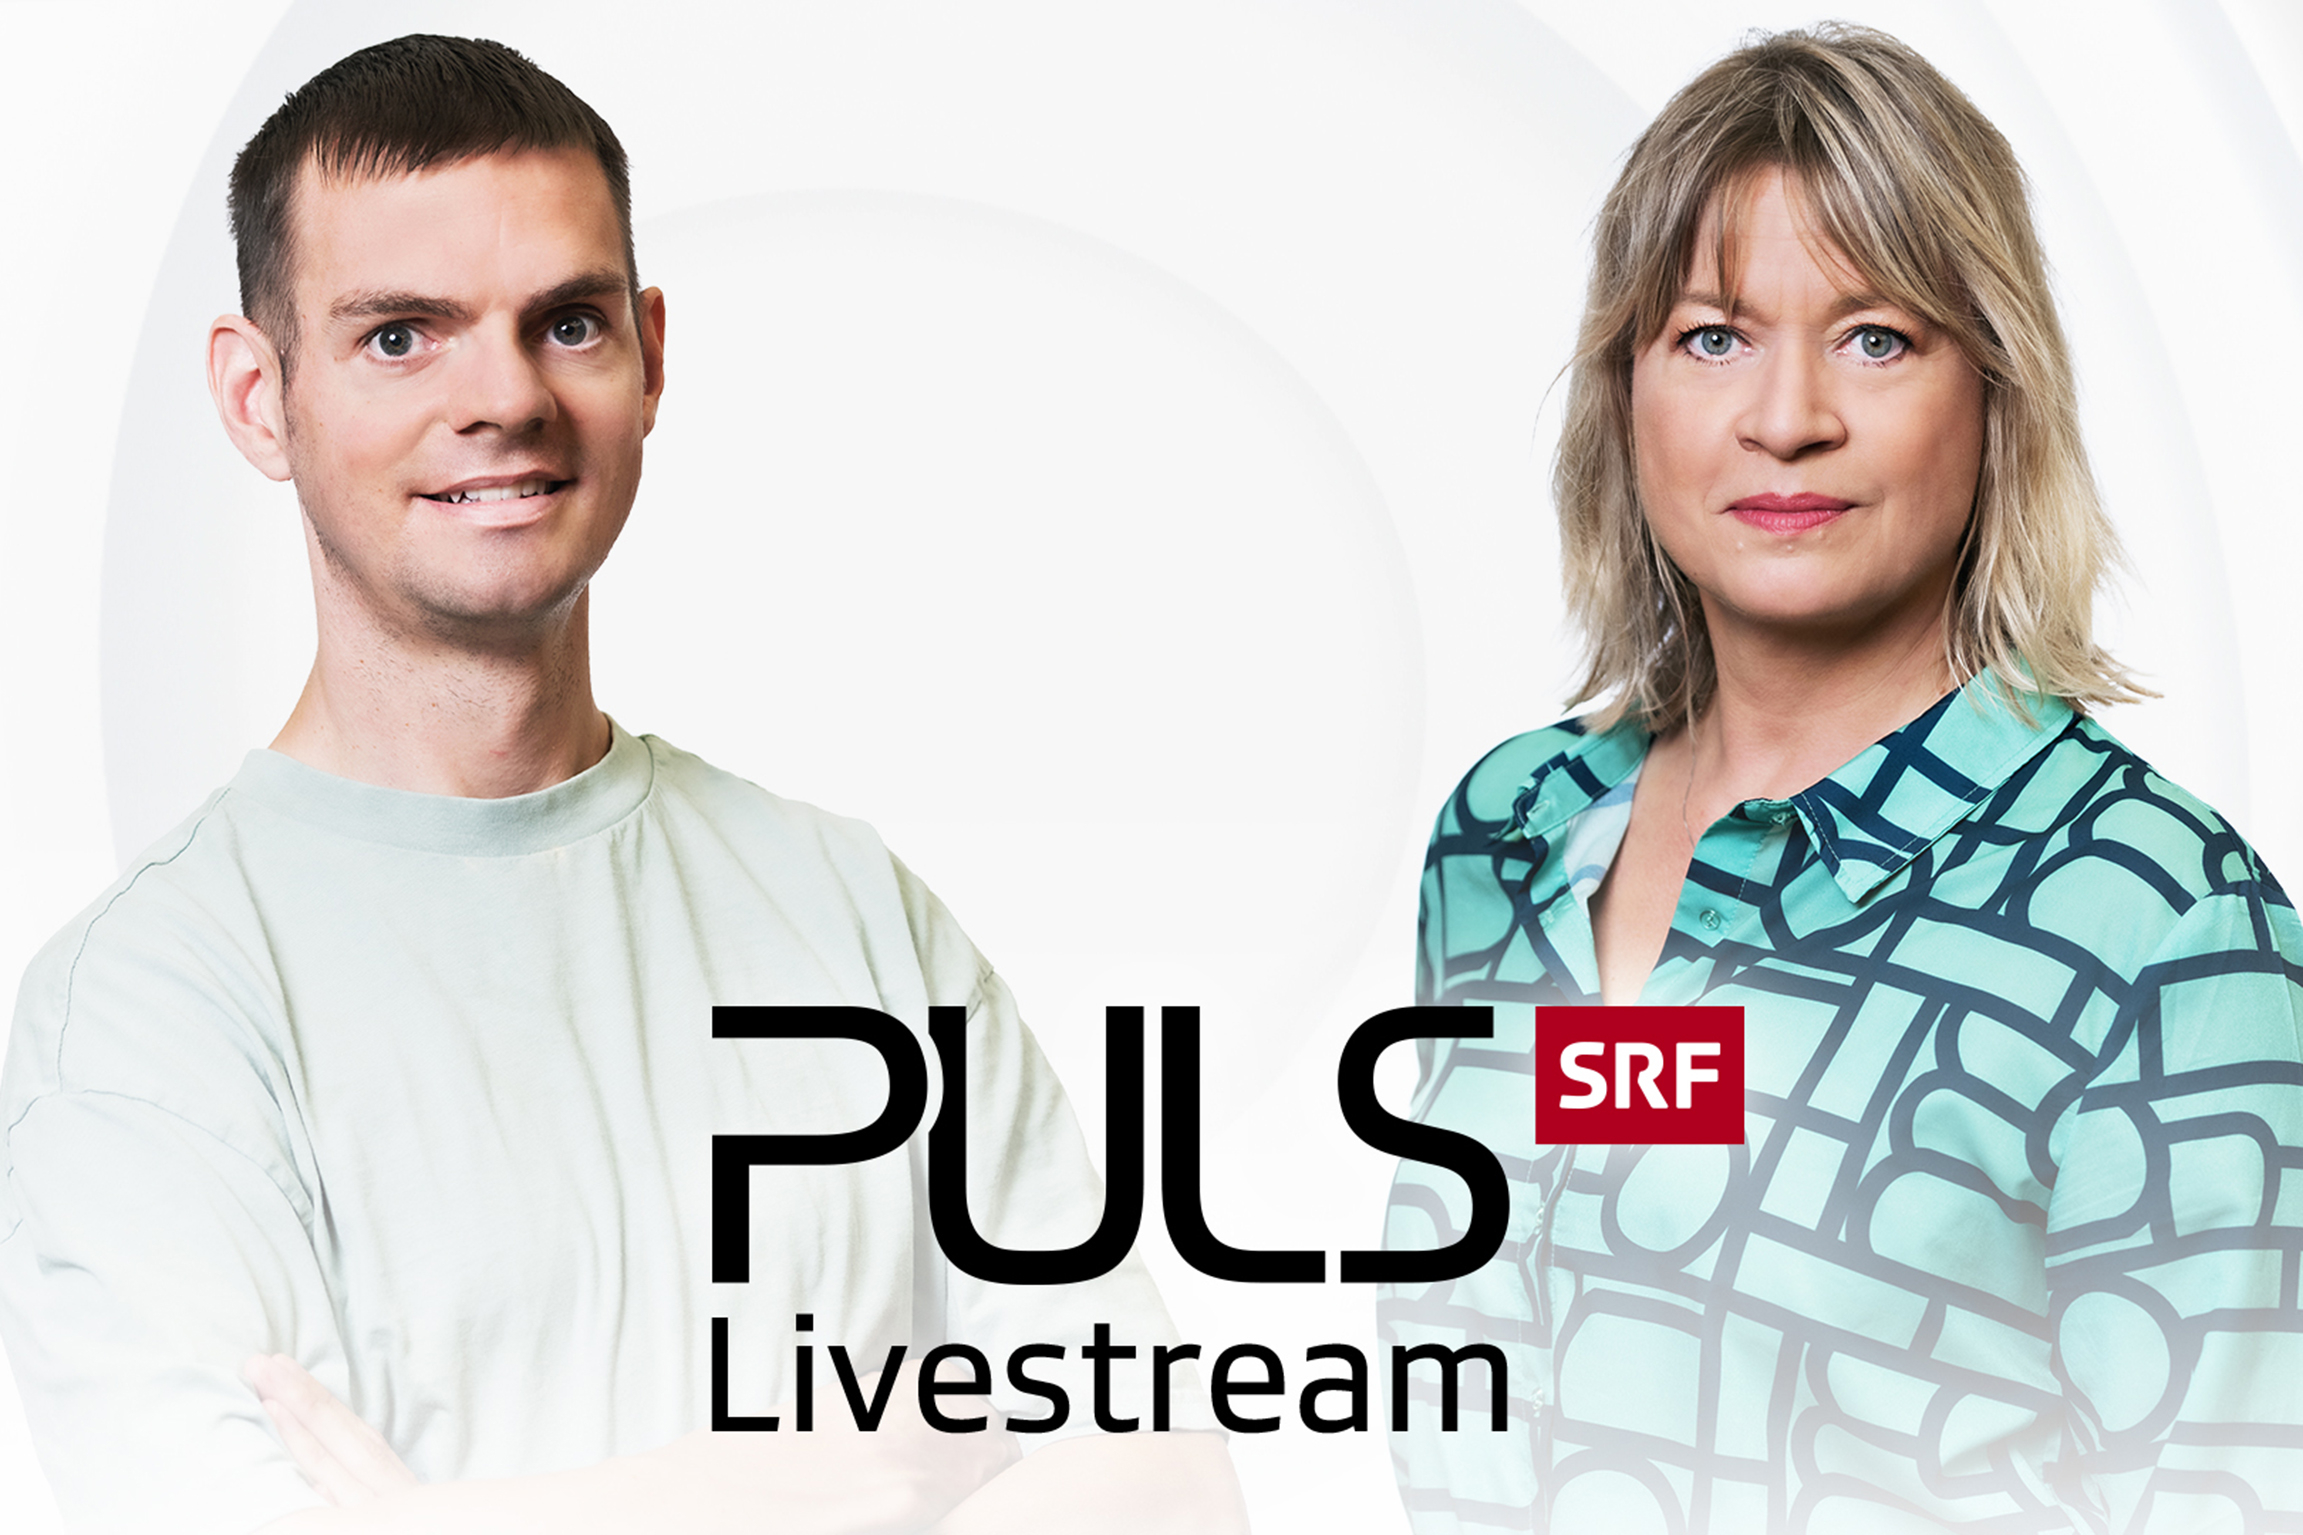 Puls» feiert 30-Jahre-Jubiläum mit Livestream und Spezialsendung - News |  SRG Deutschschweiz